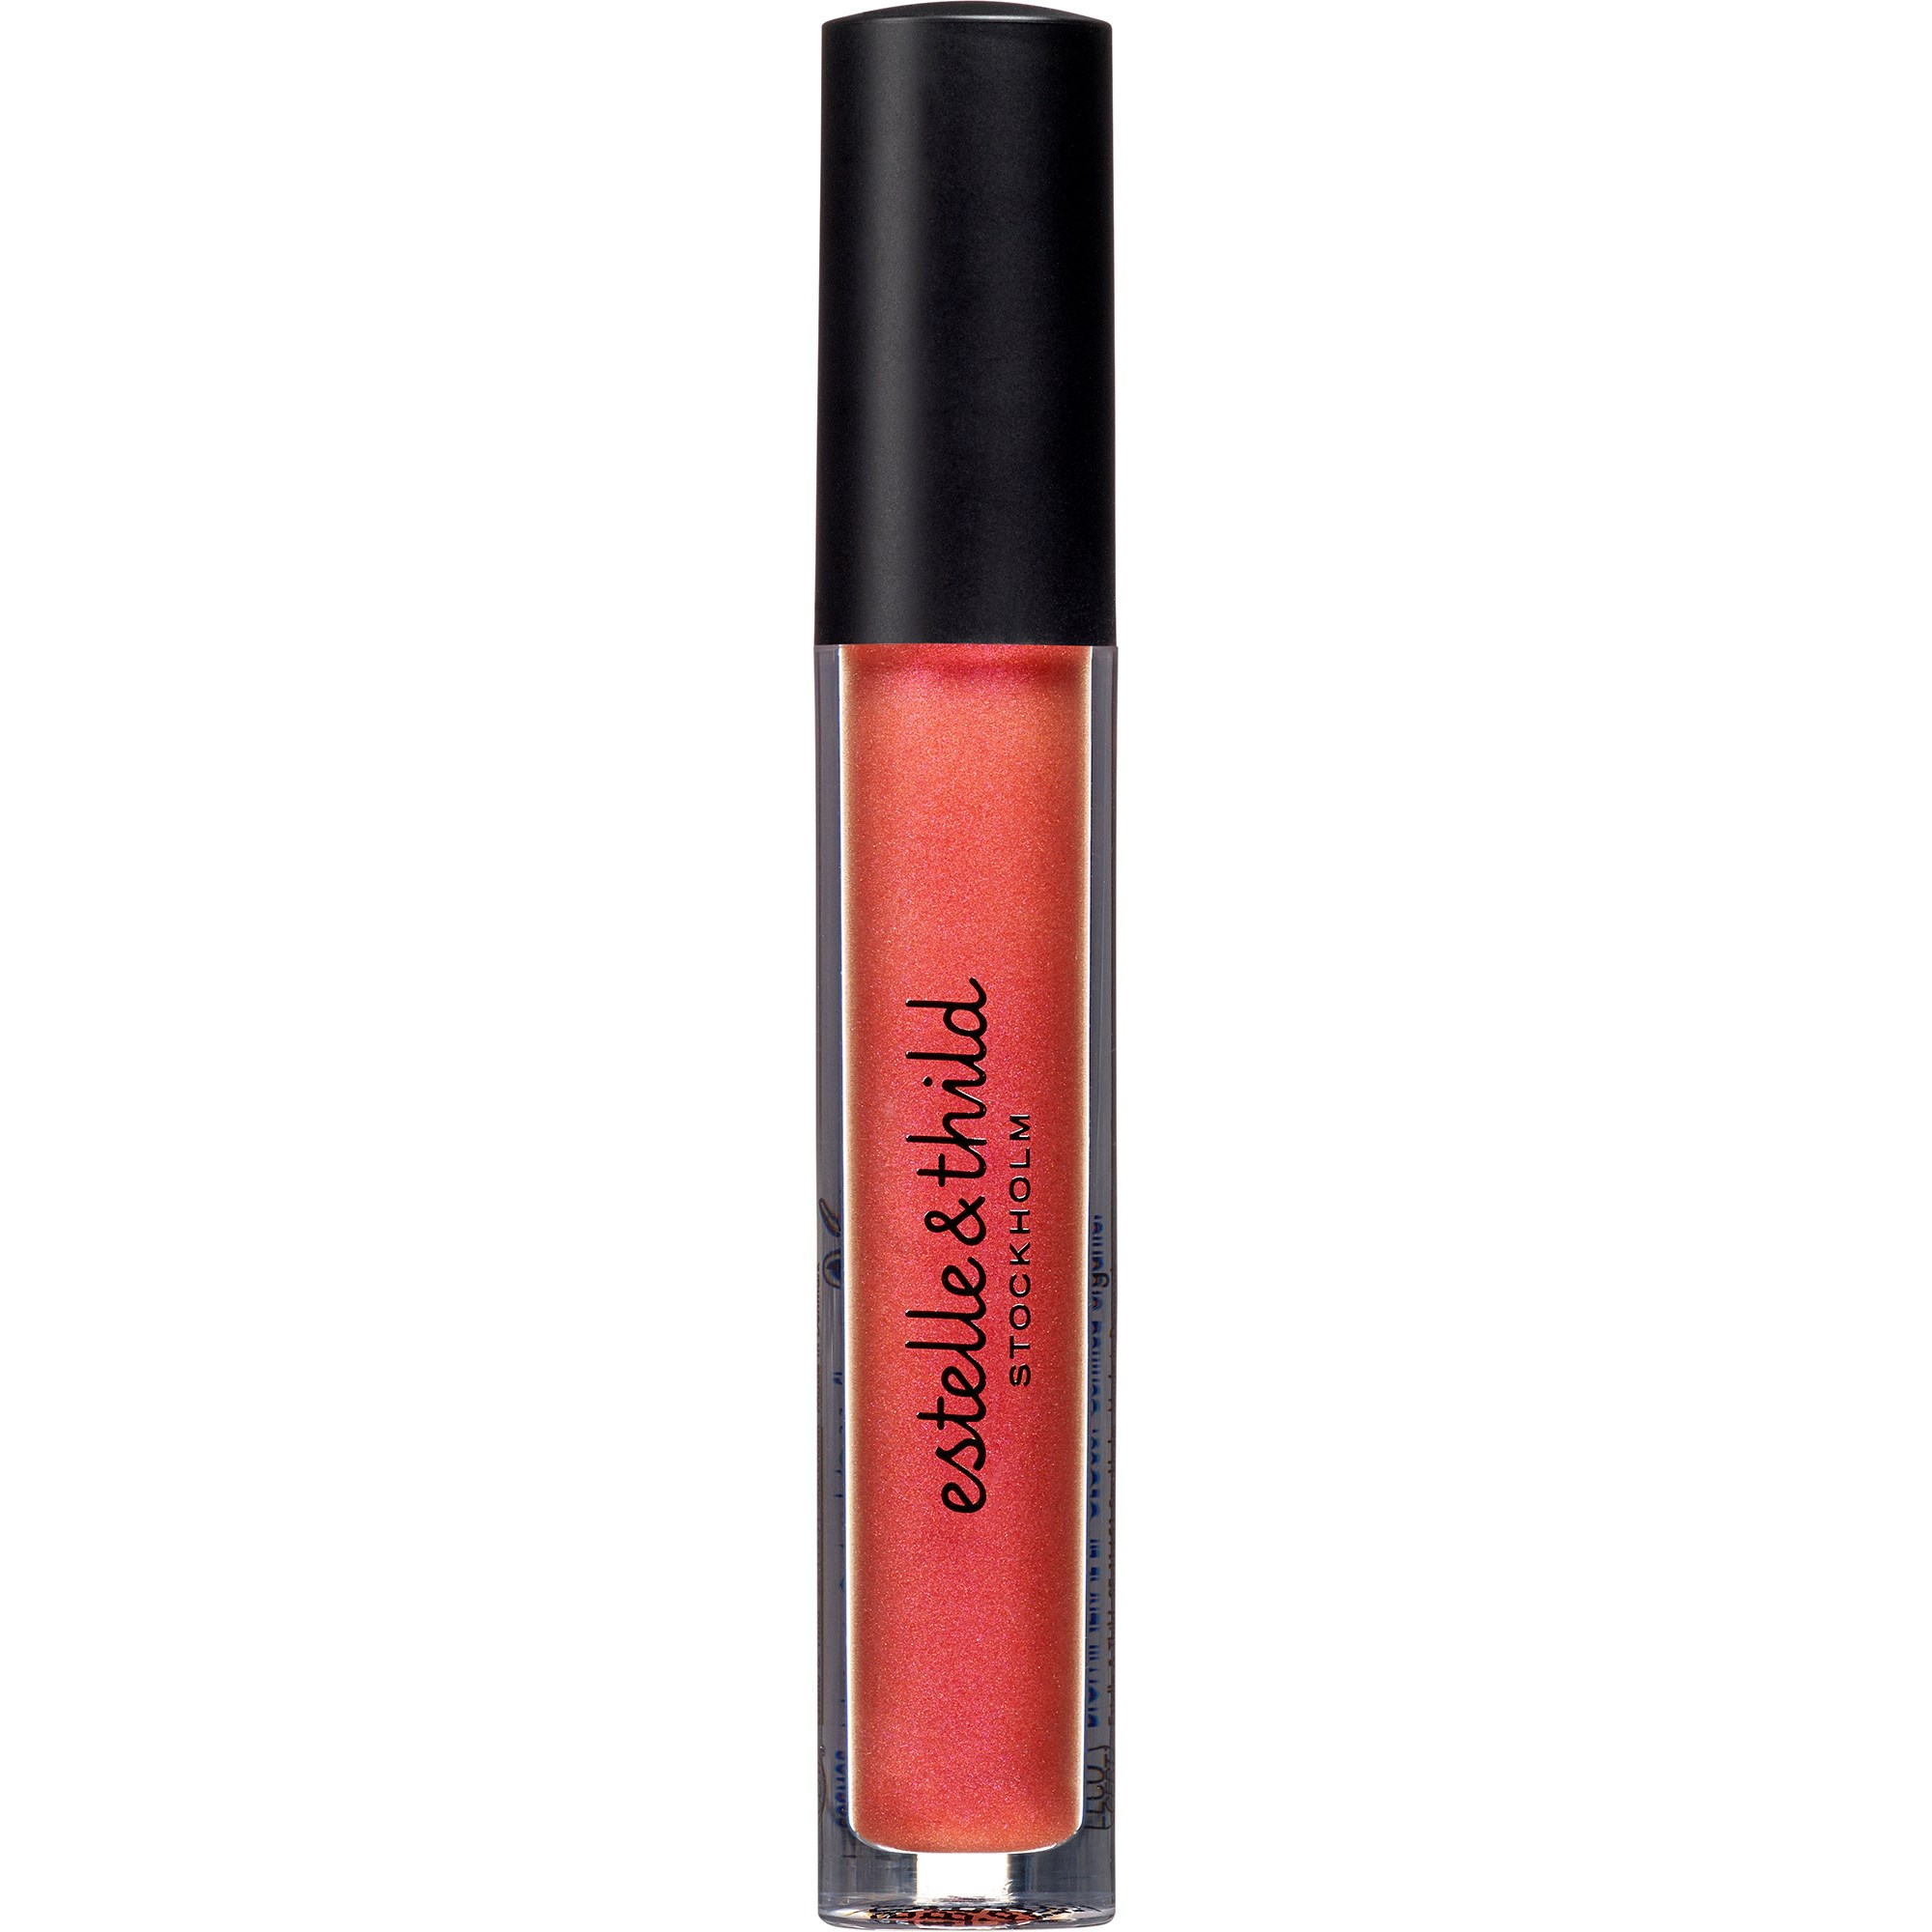 Bilde av Estelle&thild Organic Beauty Biomineral Lip Gloss Berry Boost